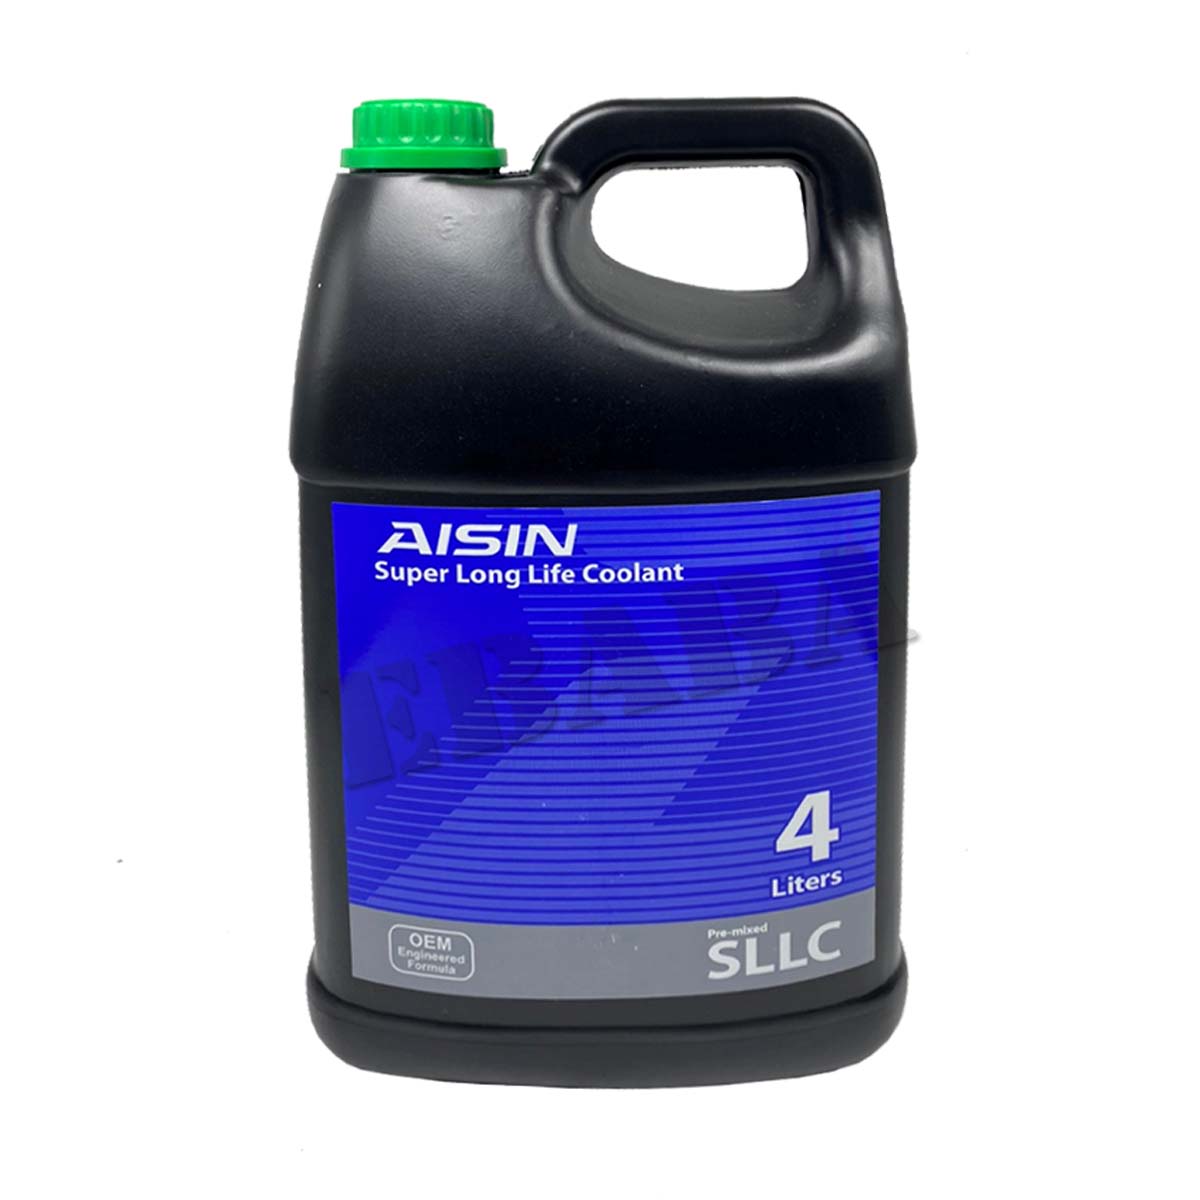 มุมมองเพิ่มเติมของสินค้า น้ำยาเติมหม้อน้ำ น้ำยาหล่อเย็น AISIN Super Long Lift Coolant สูตรพิเศษ แบบพร้อมเติม (สีเขียว) 4 ลิตร